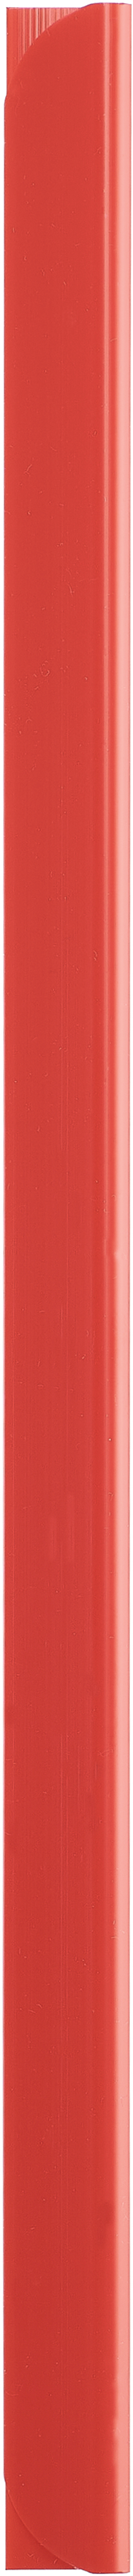 KOLMA Rail de serrage 3mm A4 10.746.04 rouge 25 pcs. rouge 25 pcs.